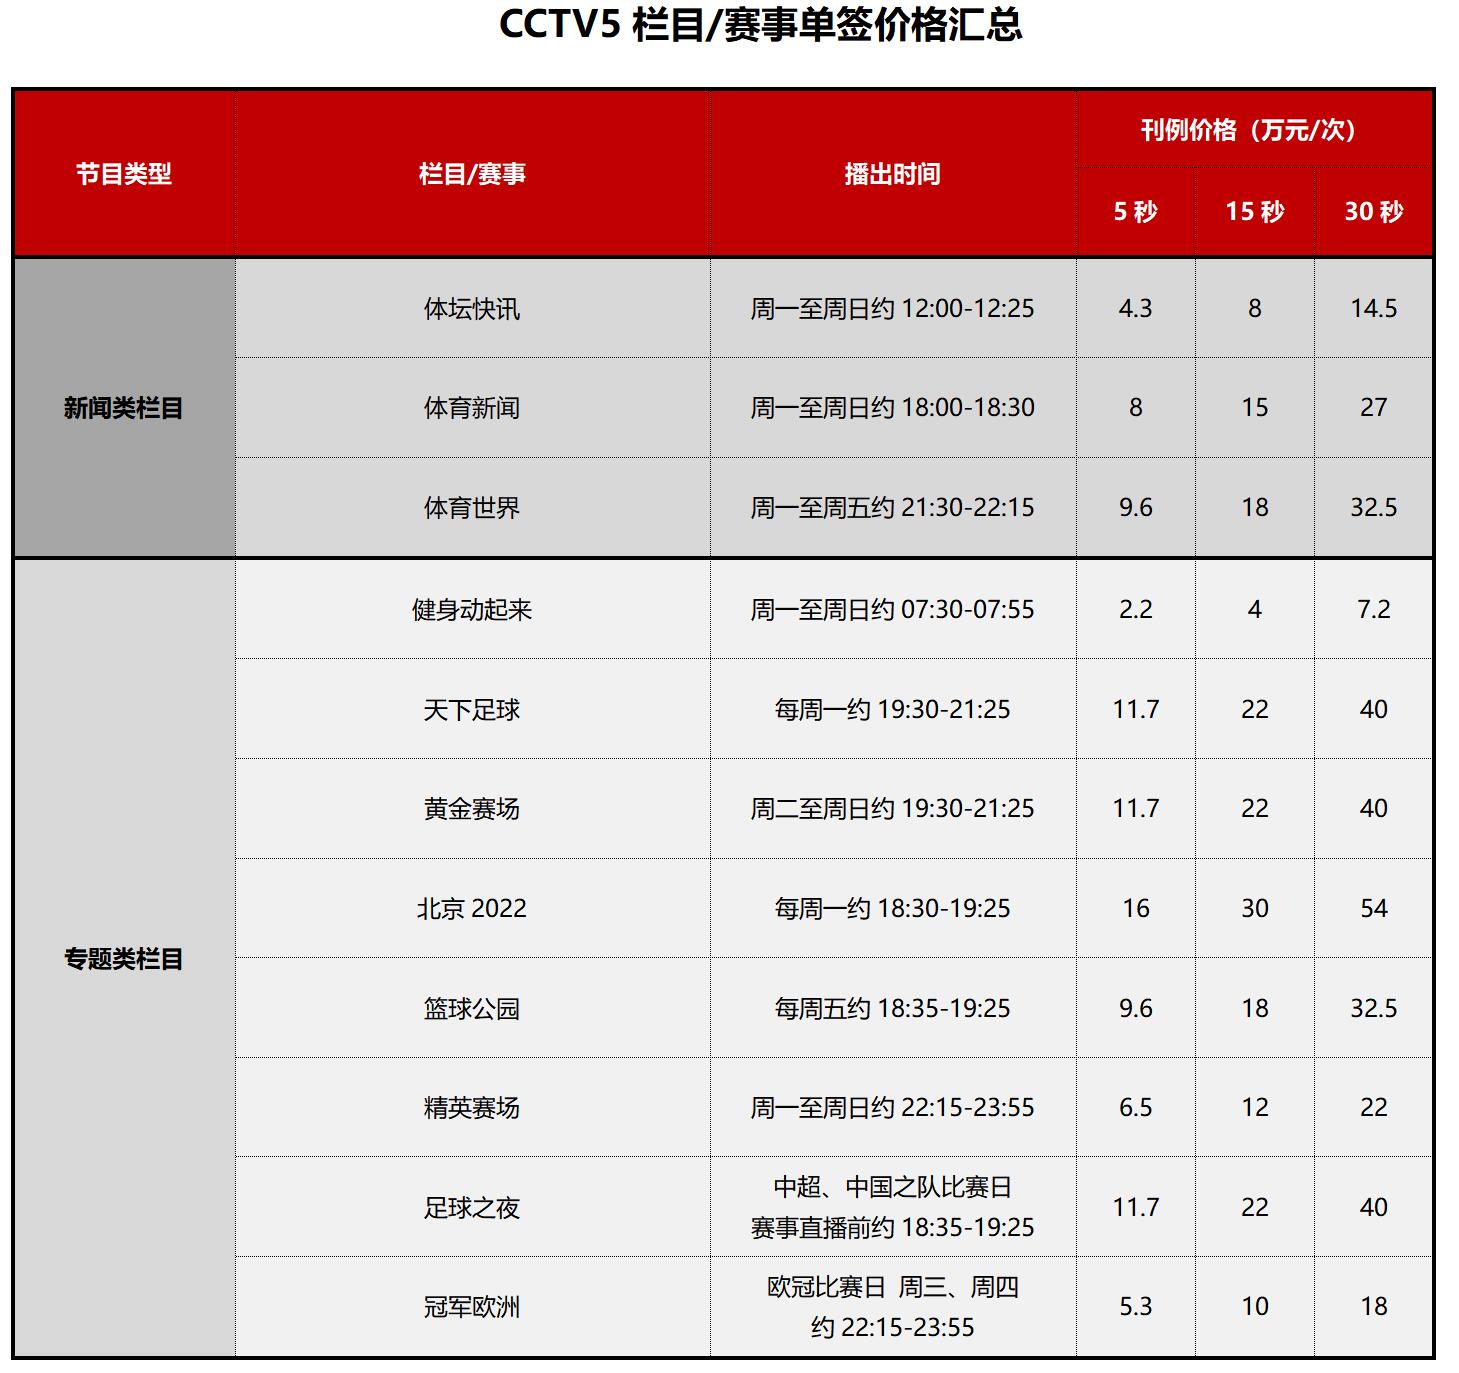 CCTV5广告